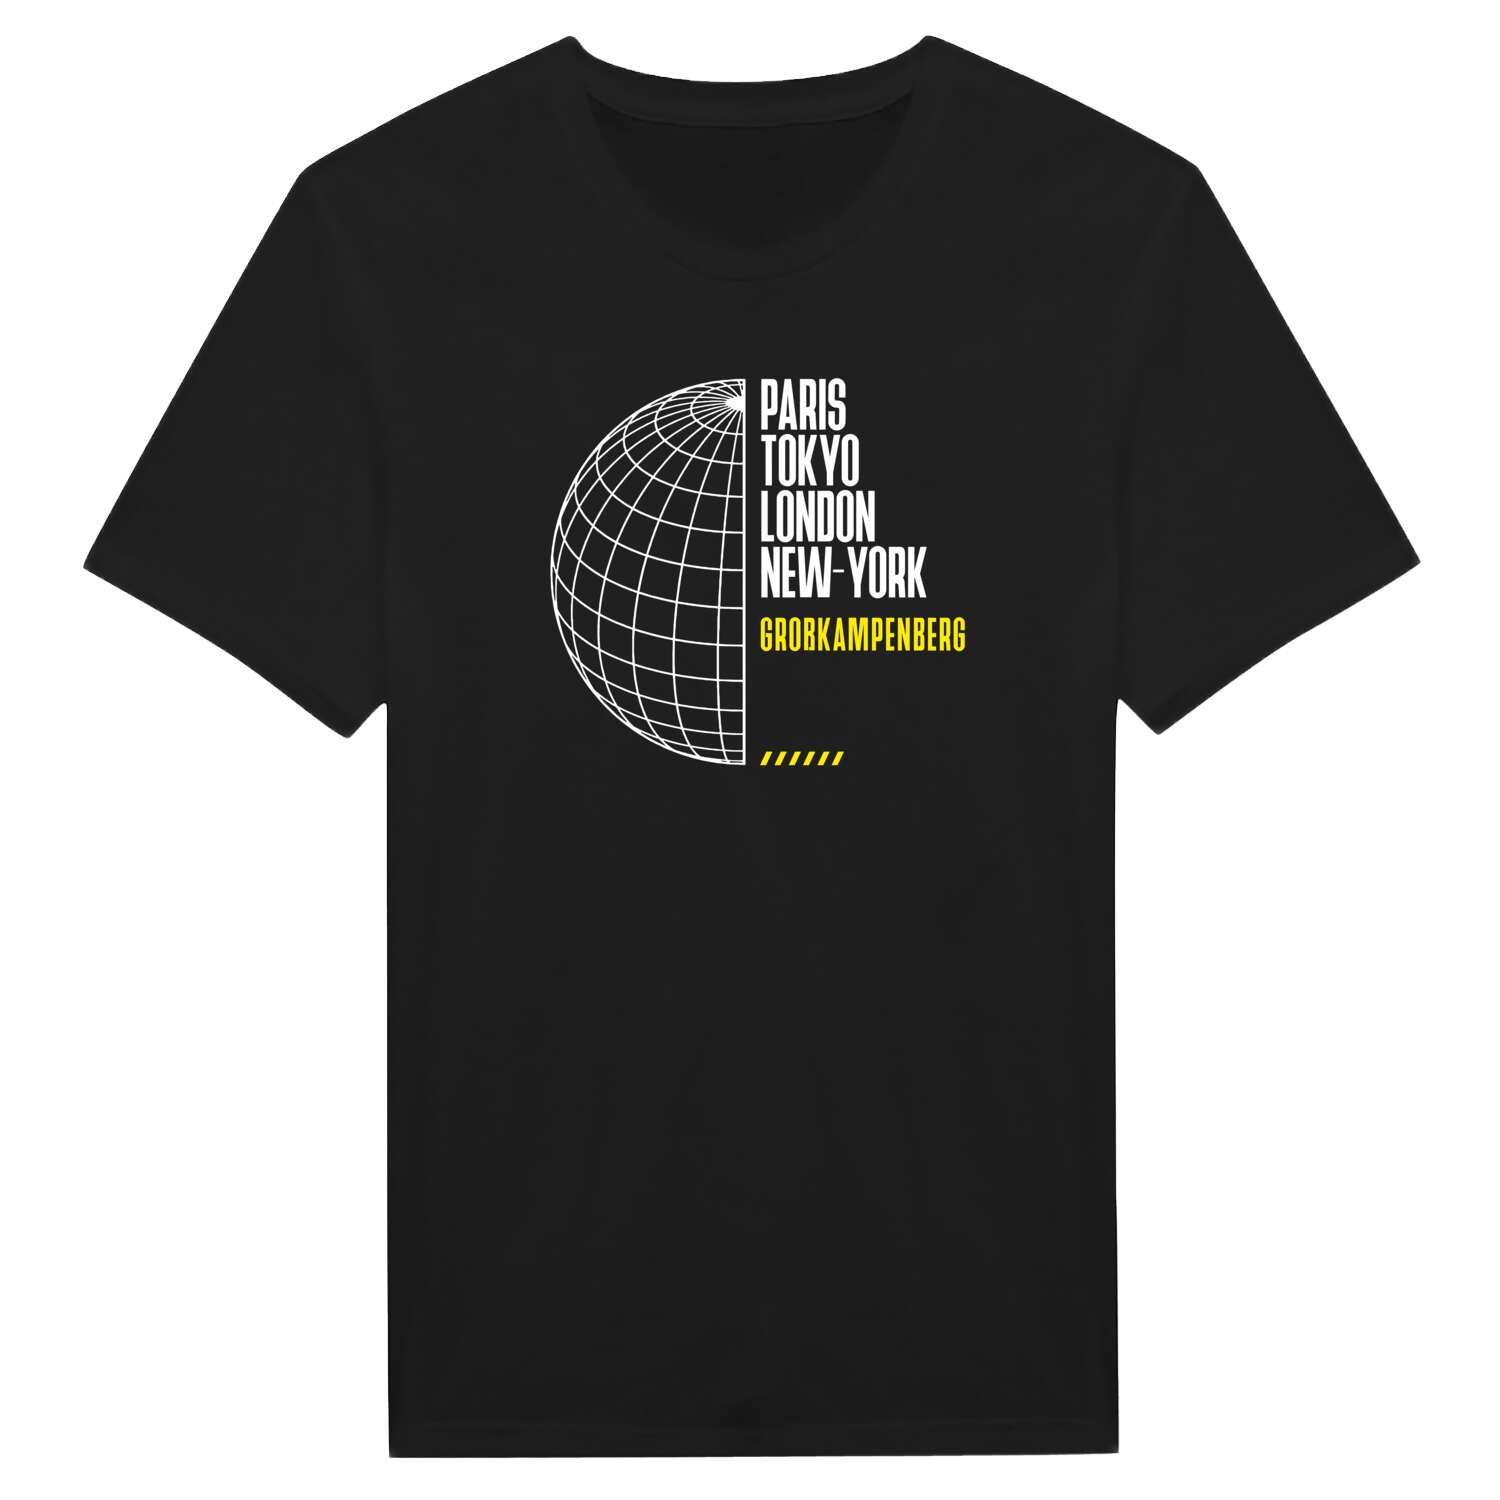 Großkampenberg T-Shirt »Paris Tokyo London«